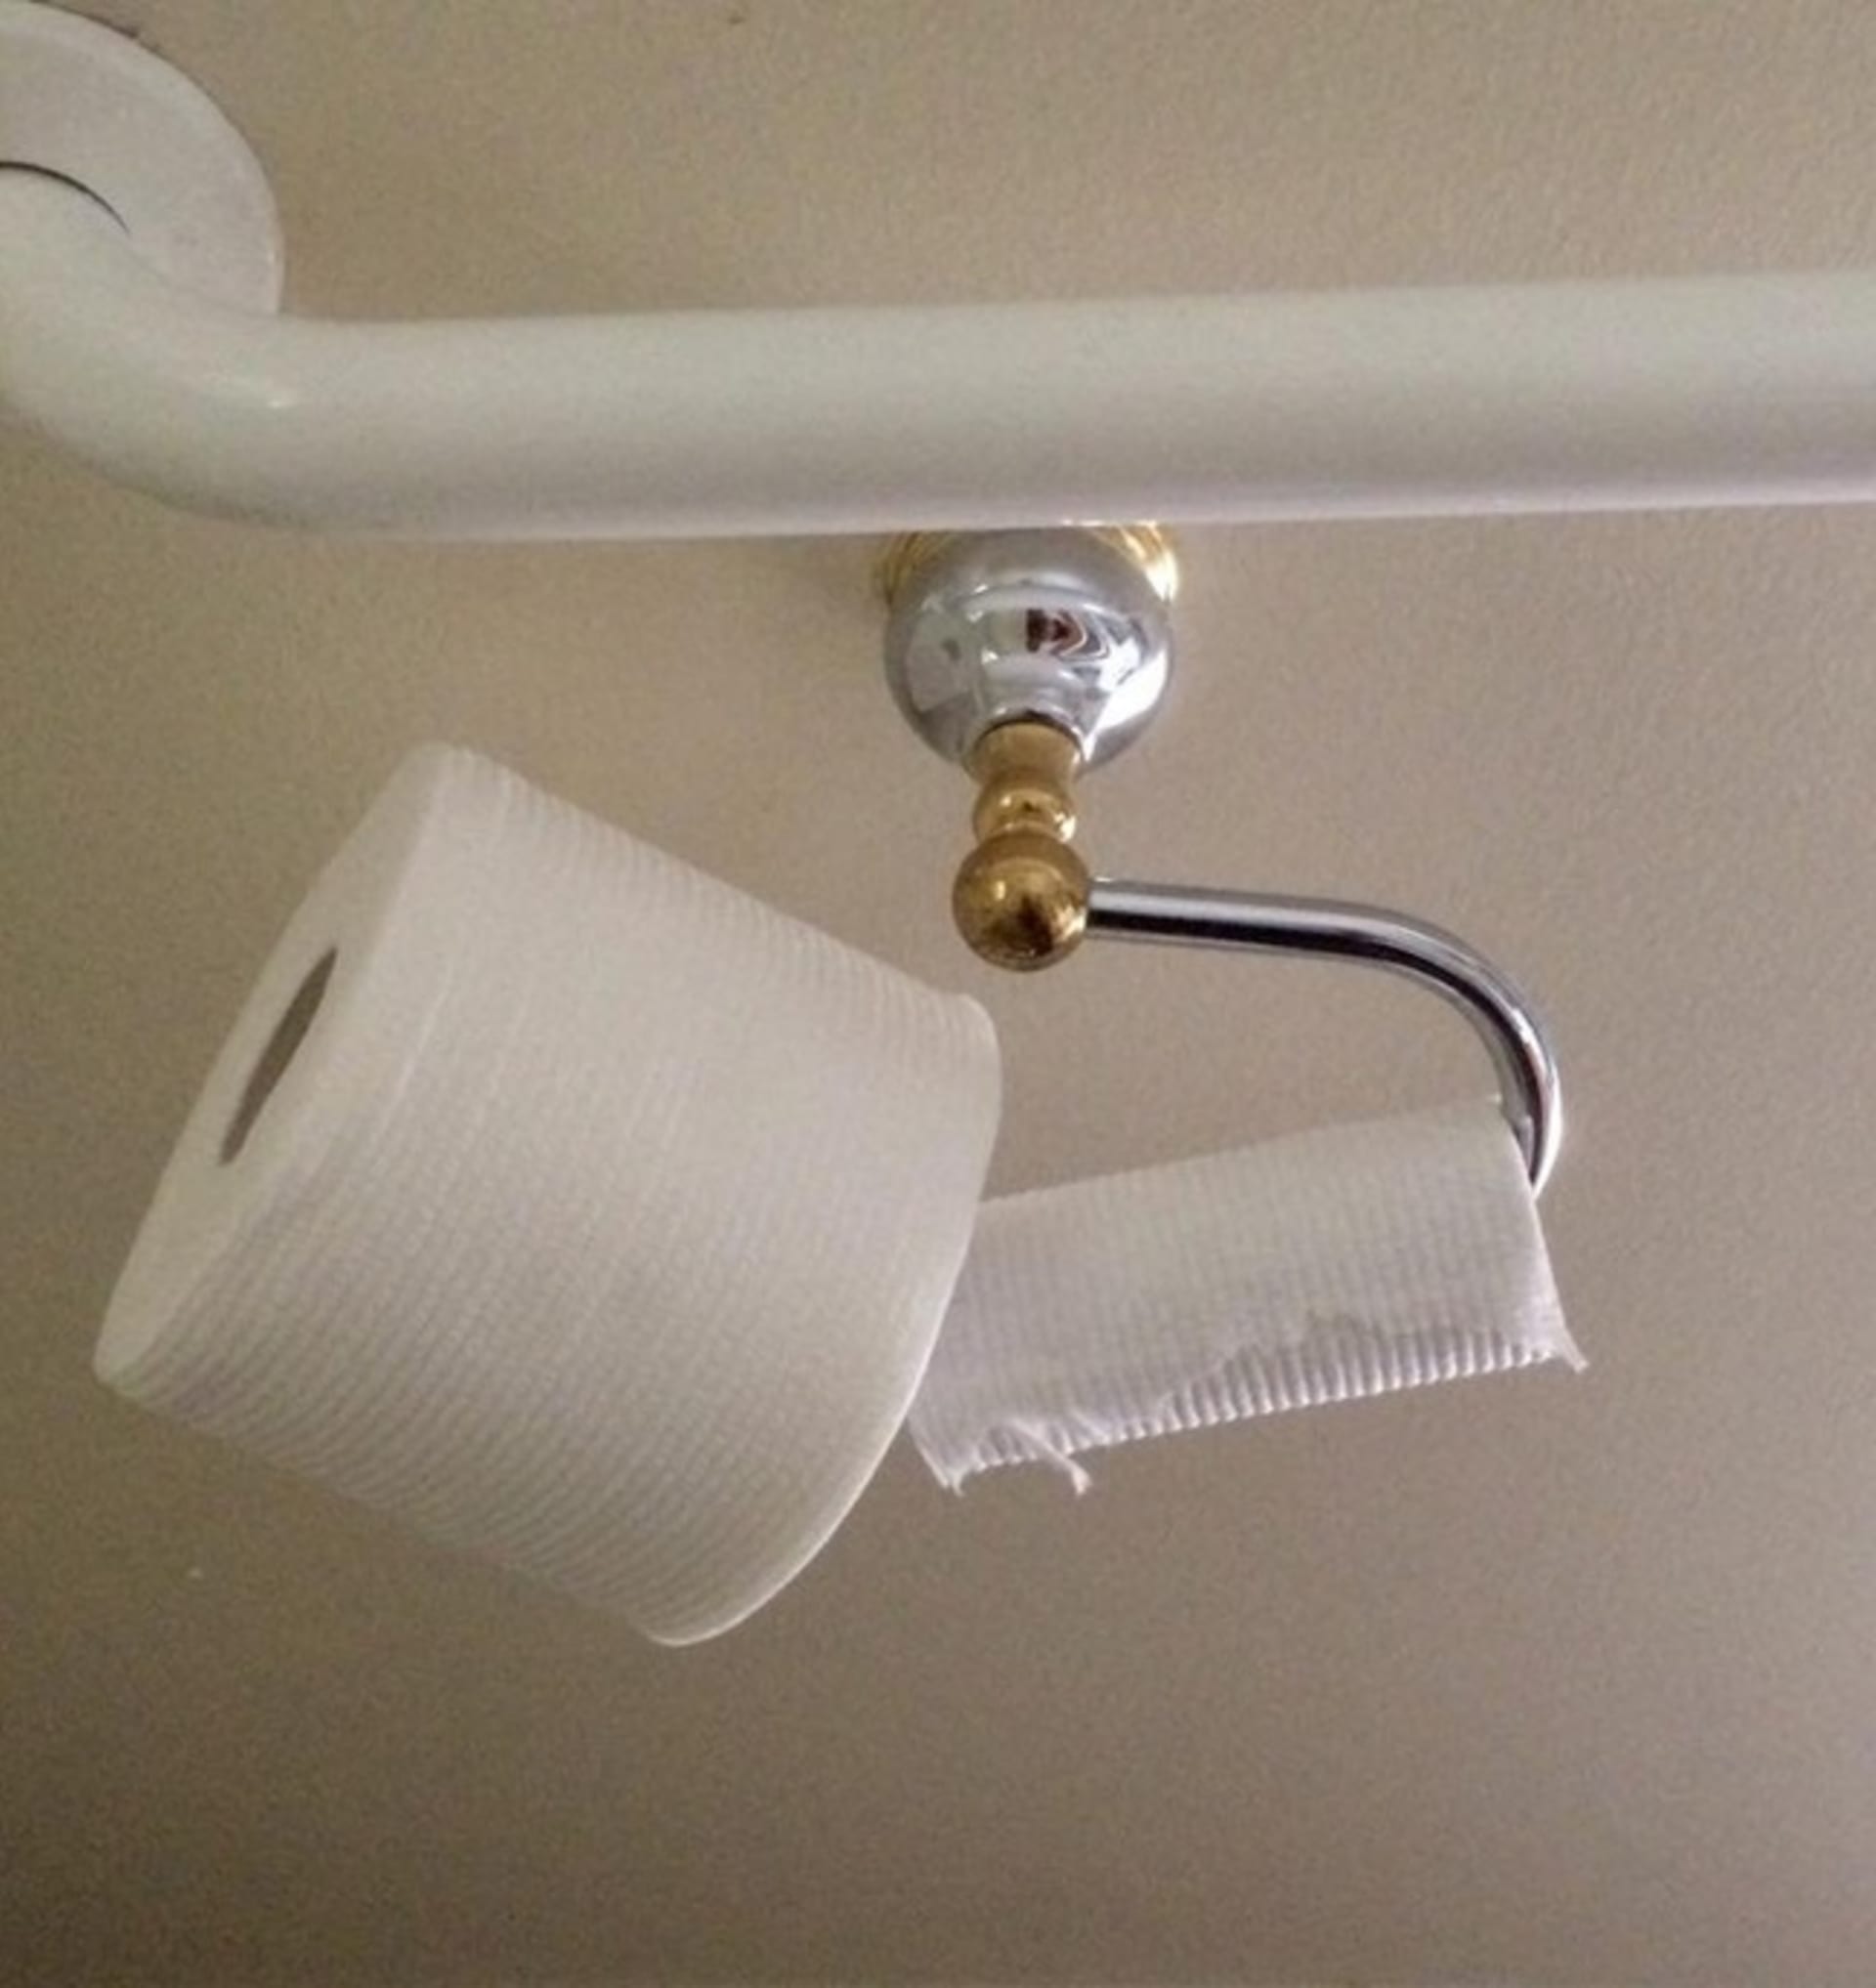 Způsob, jakým moje žena mění toaletní papír.